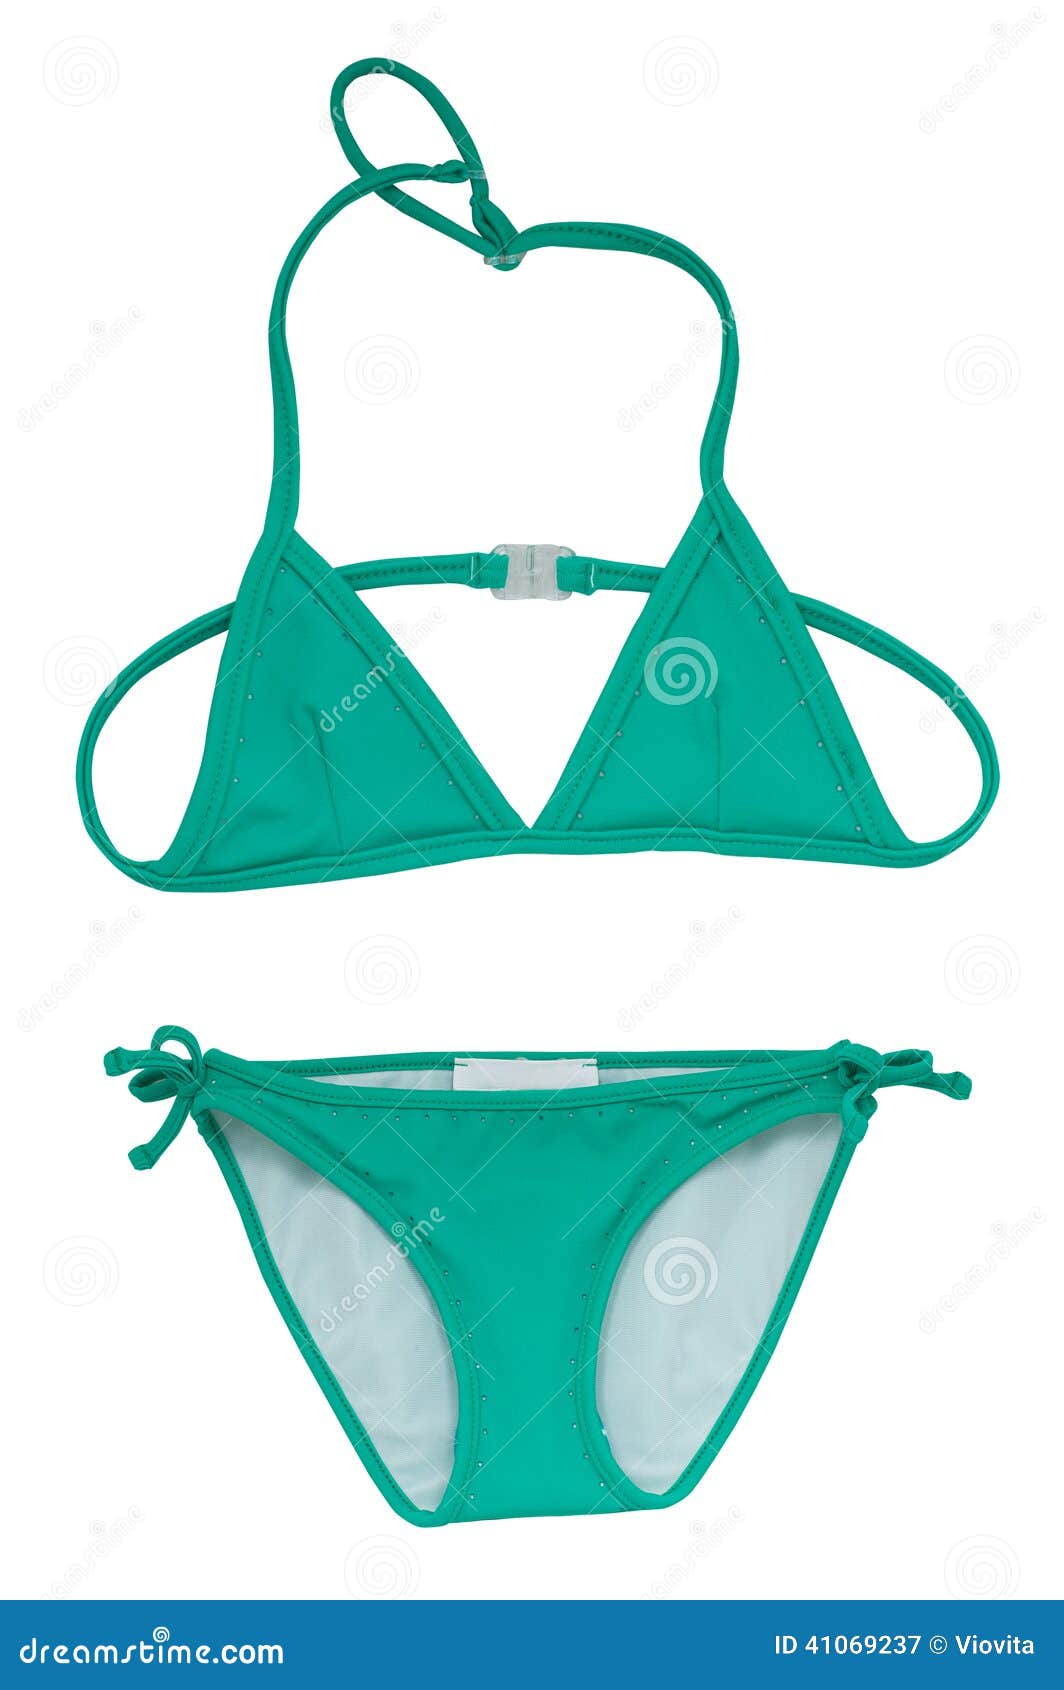 summer bikini concept